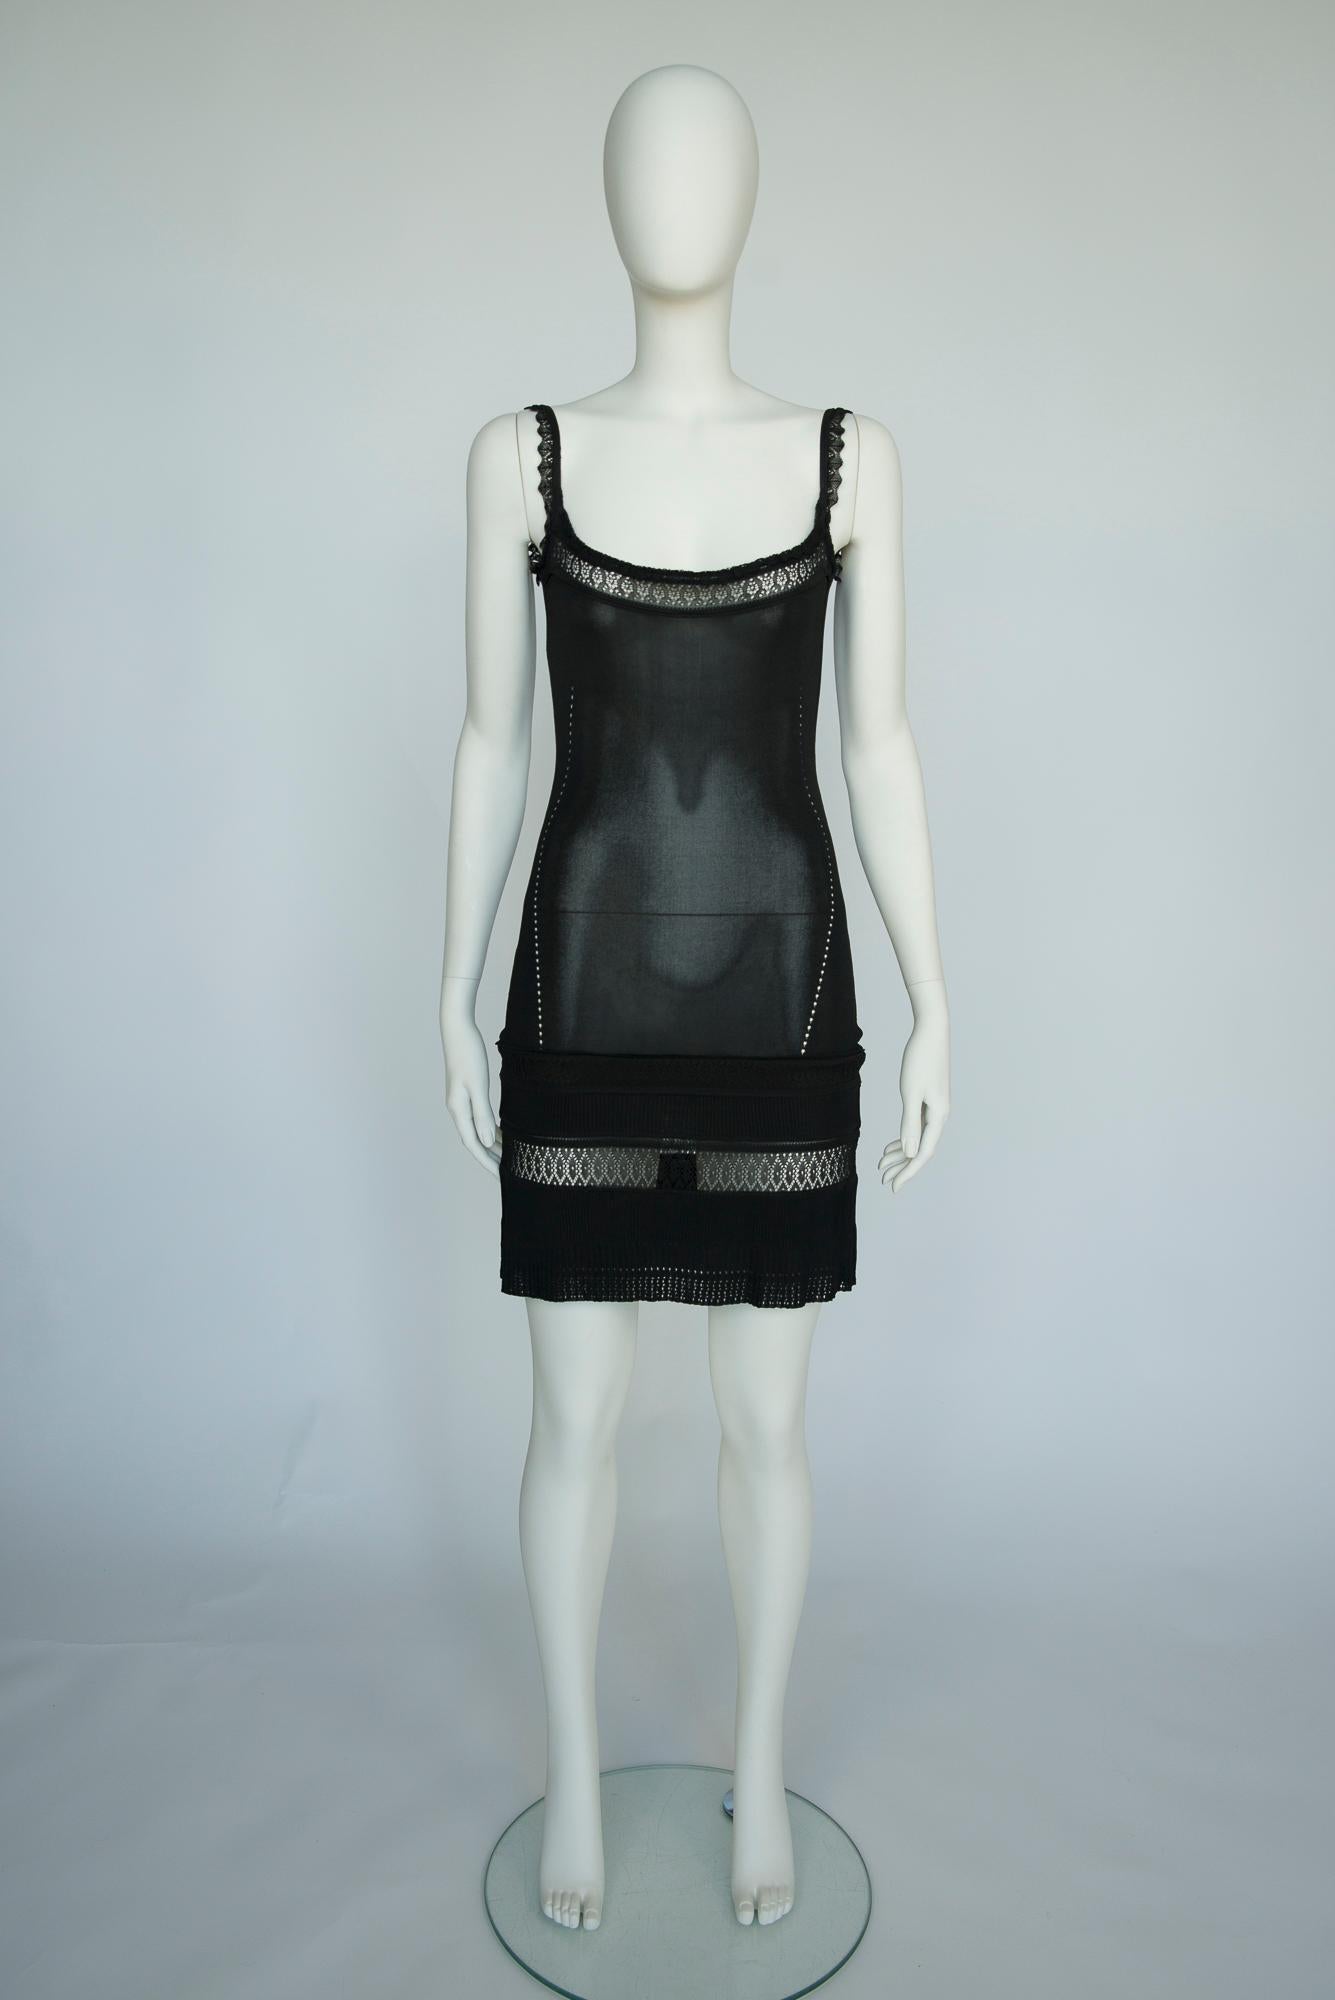 Cette robe unique Christian Dior by John Galliano, printemps-été 1998, est tricotée pour une coupe ajustée à la silhouette avec des détails crochetés, montrant la peau aux bons endroits. Le décolleté plongeant et les bretelles à volants crochetés